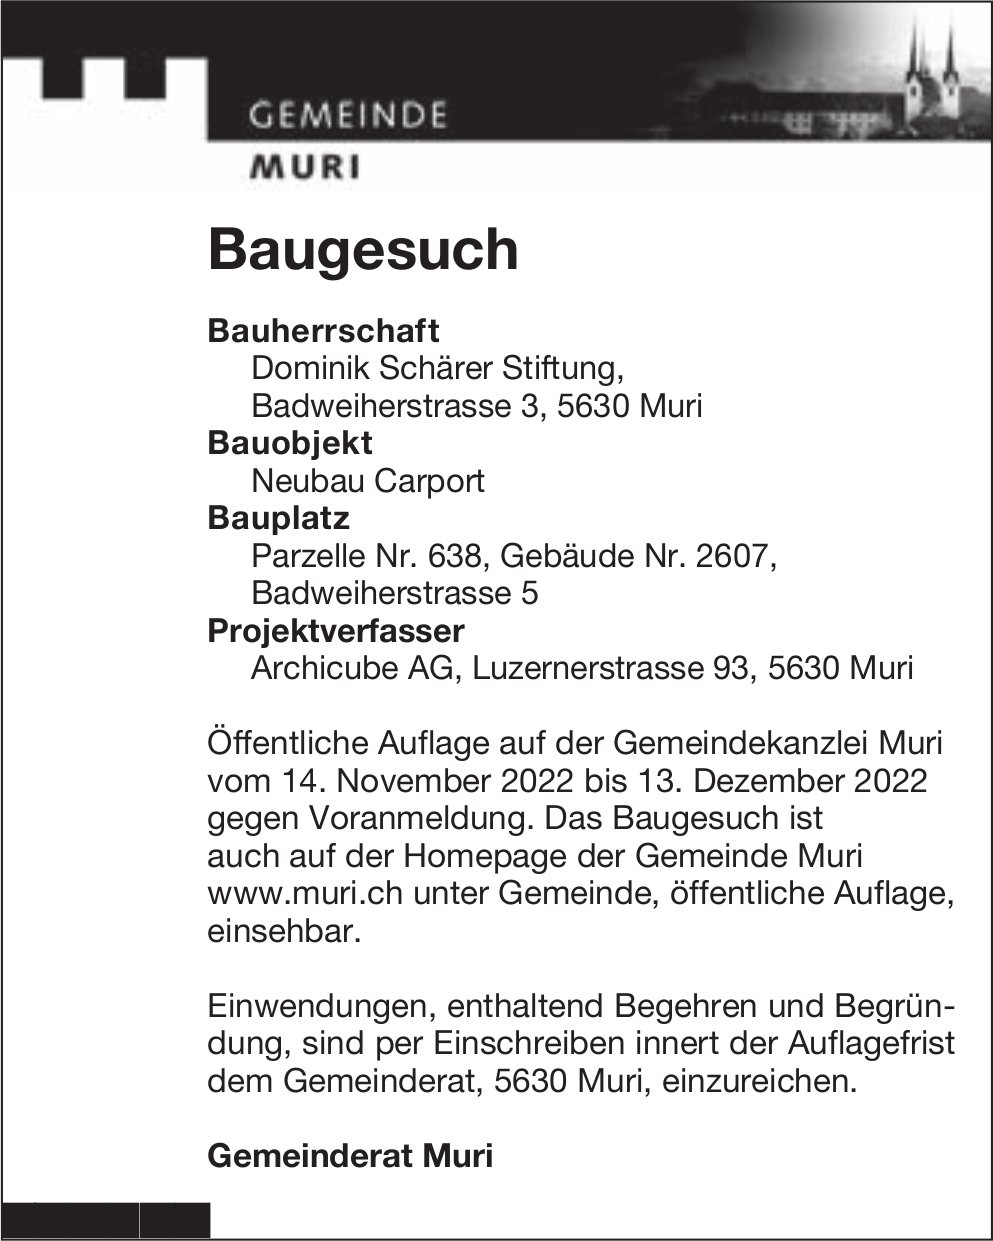 Baugesuche, Muri - Dominik Schärer Stiftung